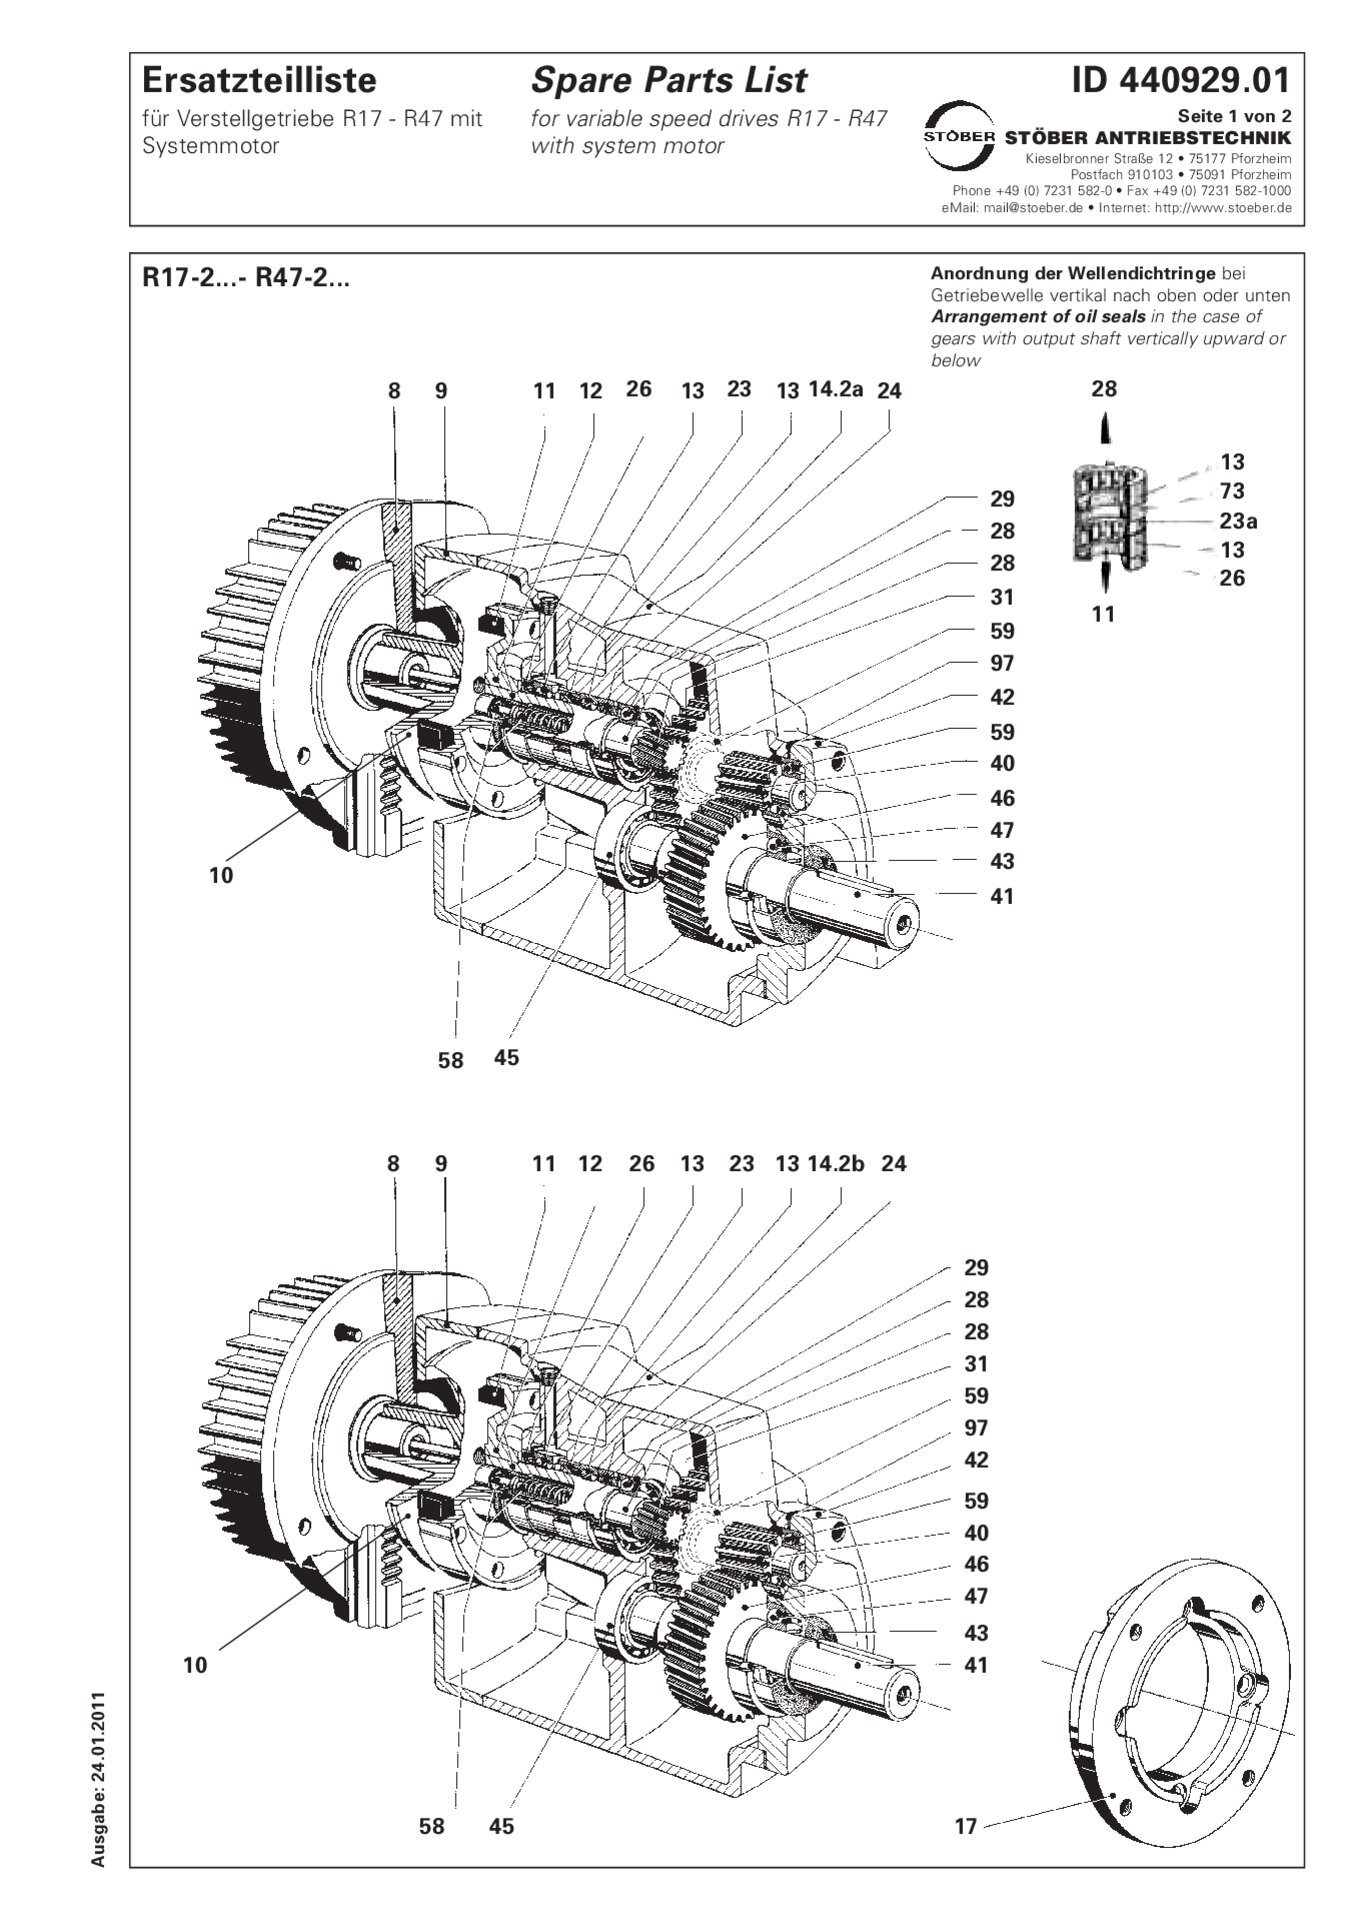 Spare parts list R17-2/R27-2/R37-2/R47-2 with system motorErsatzteilliste R17-2/R27-2/R37-2/R47-2 mit Systemmotor